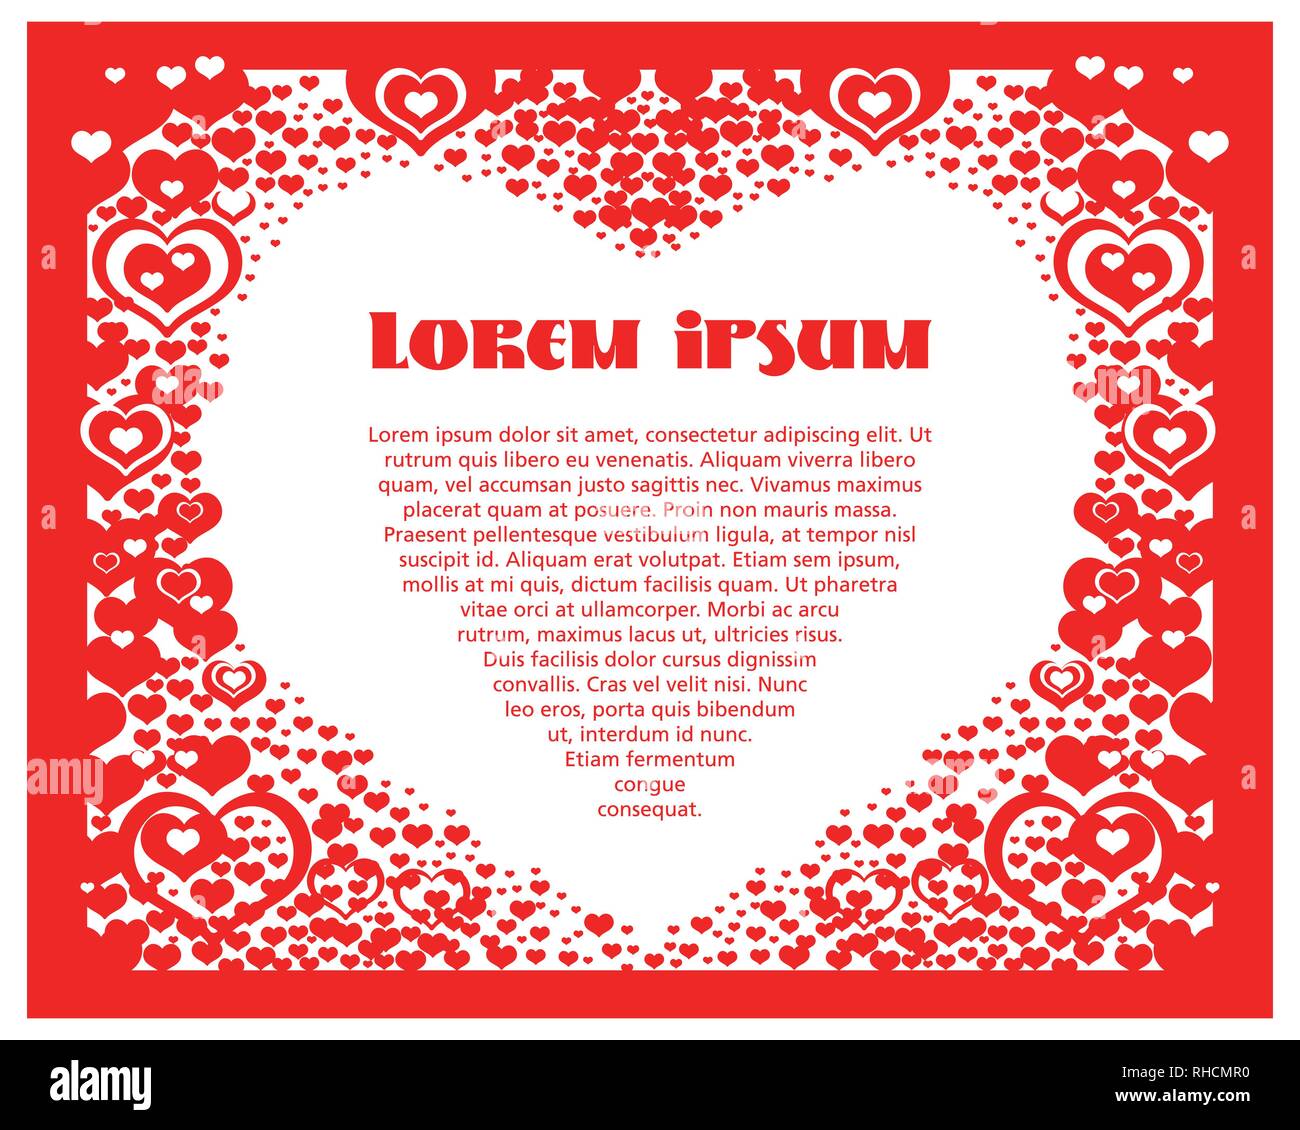 Zusammenfassung Hintergrund mit Herzen. Vector Illustration romantischen Rahmen. Valentines Banner mit weißen Herzen auf rotem Hintergrund. Vektor Postkarte für celebr Stock Vektor